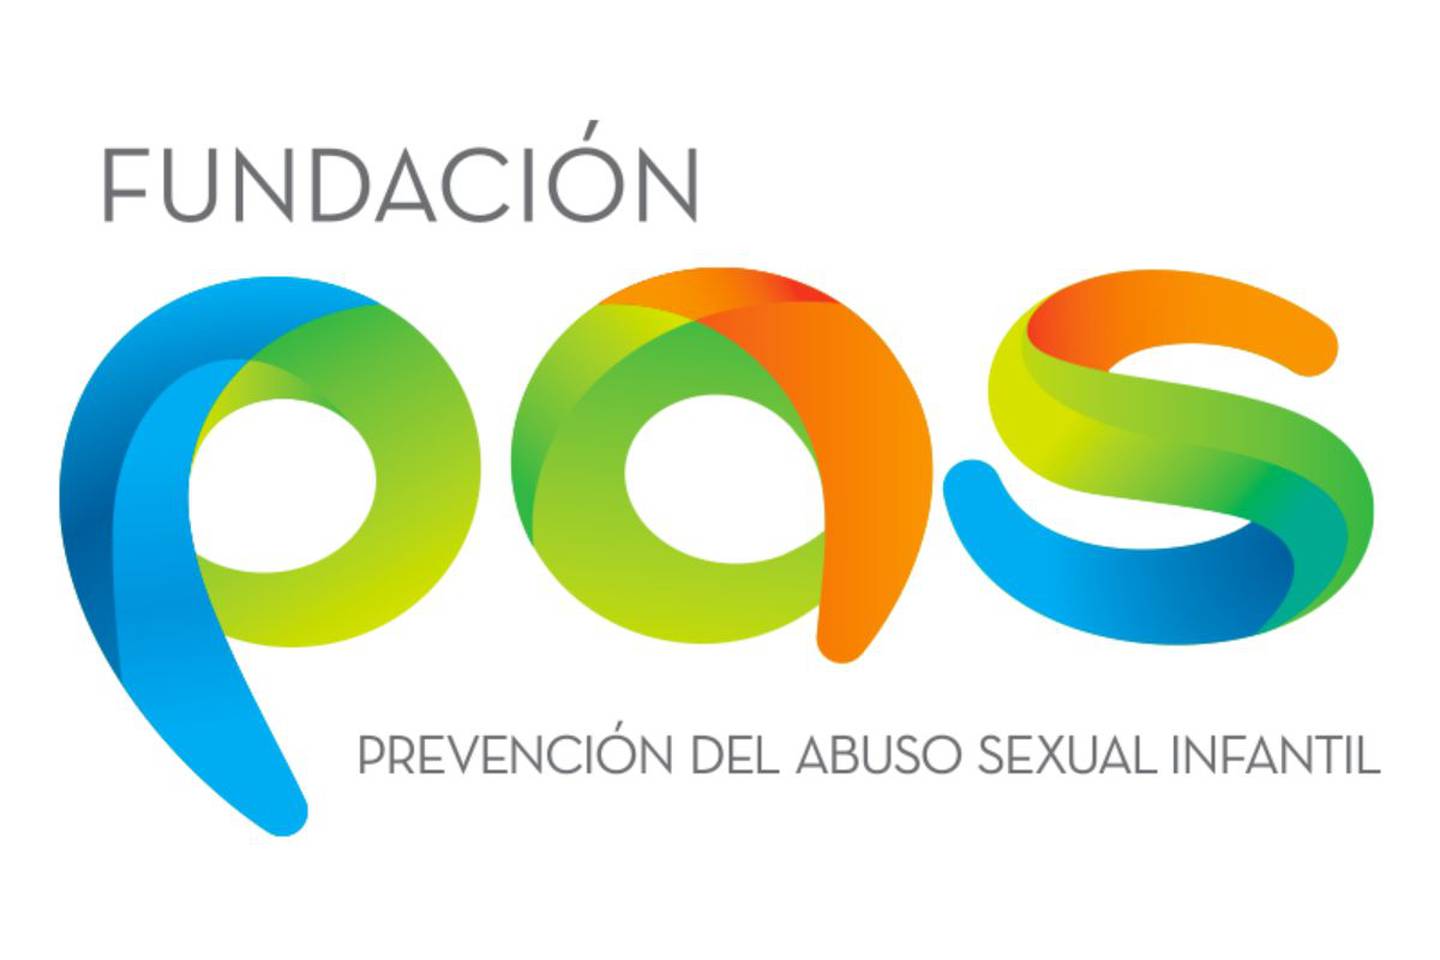 FOTO: Facebook Fundación PAS: Prevención del Abuso Sexual
@fundacion.pas